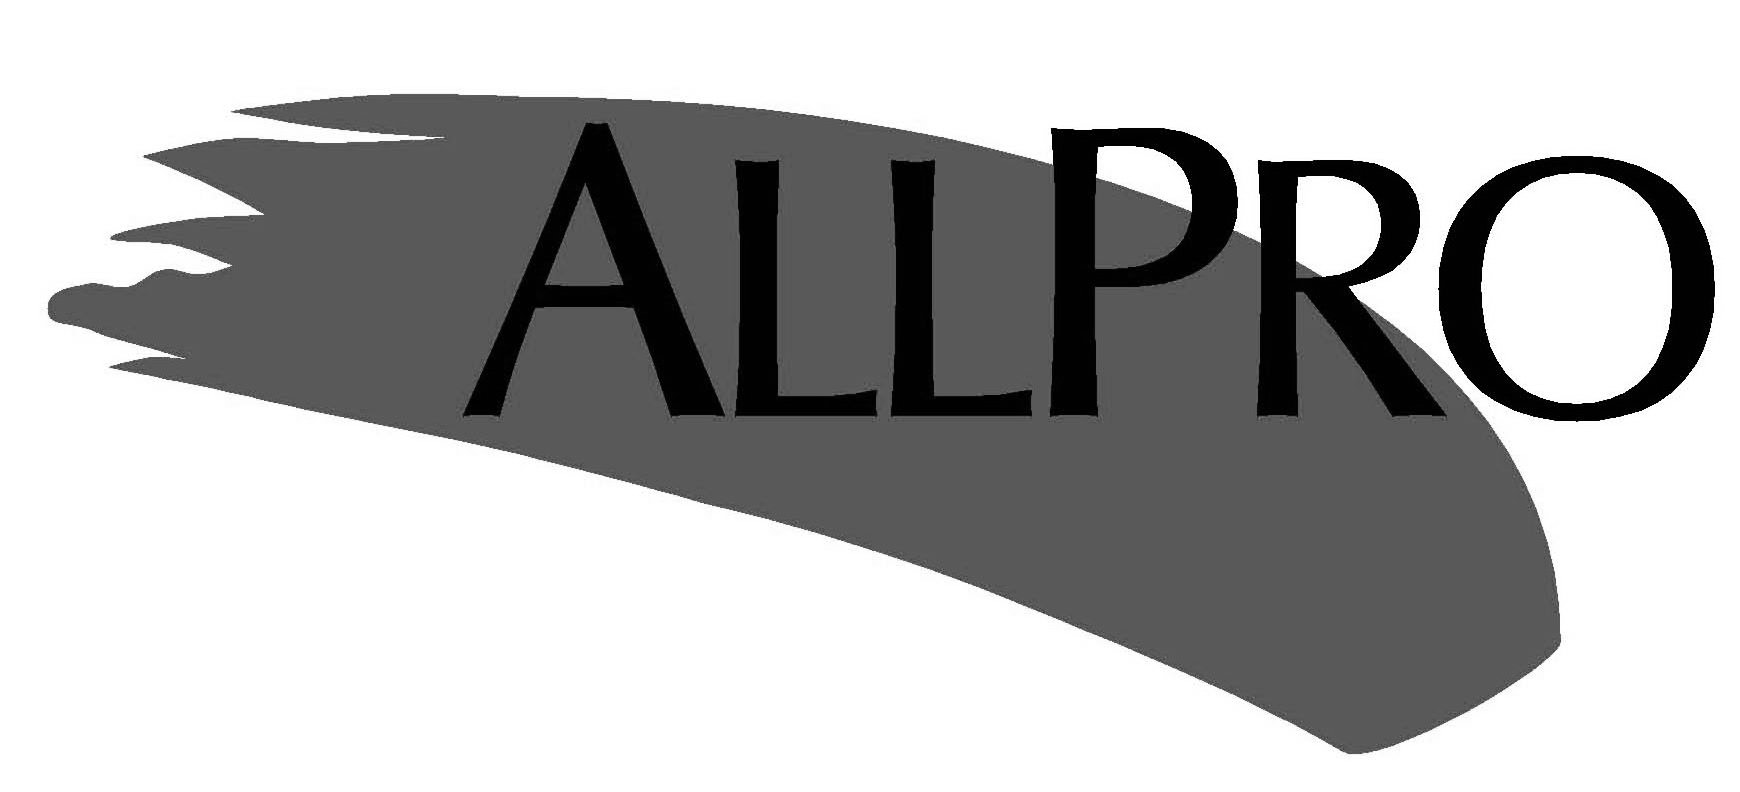 Trademark Logo ALLPRO